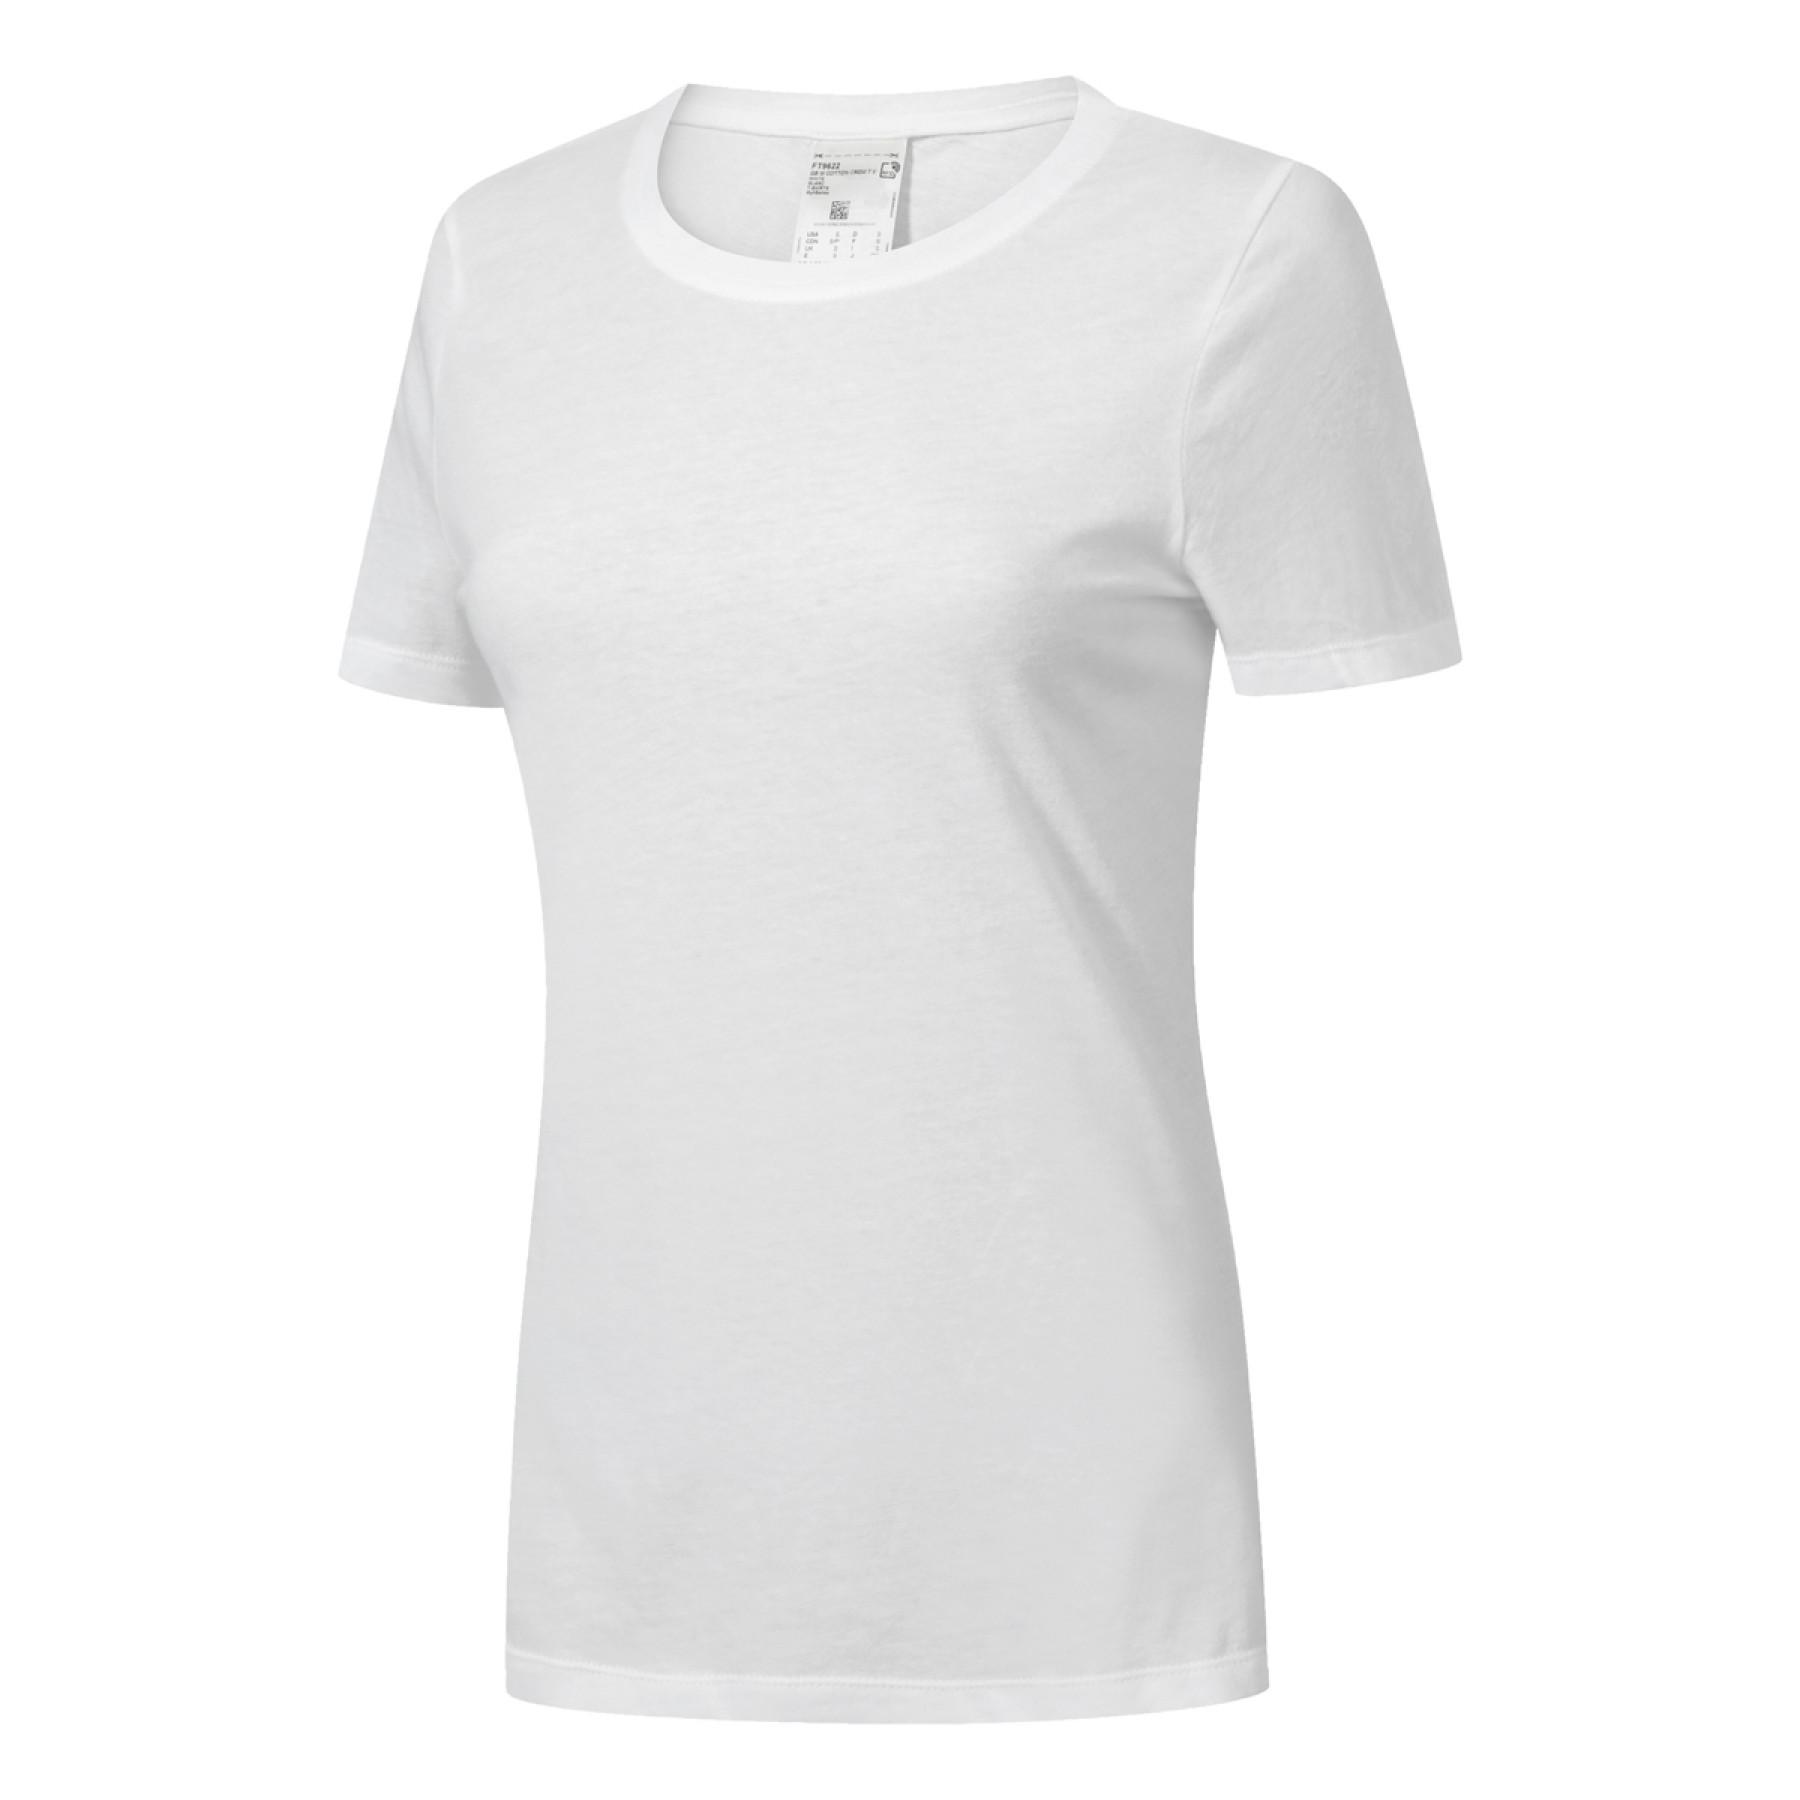 Women's T-shirt Reebok GB Cotton Vector